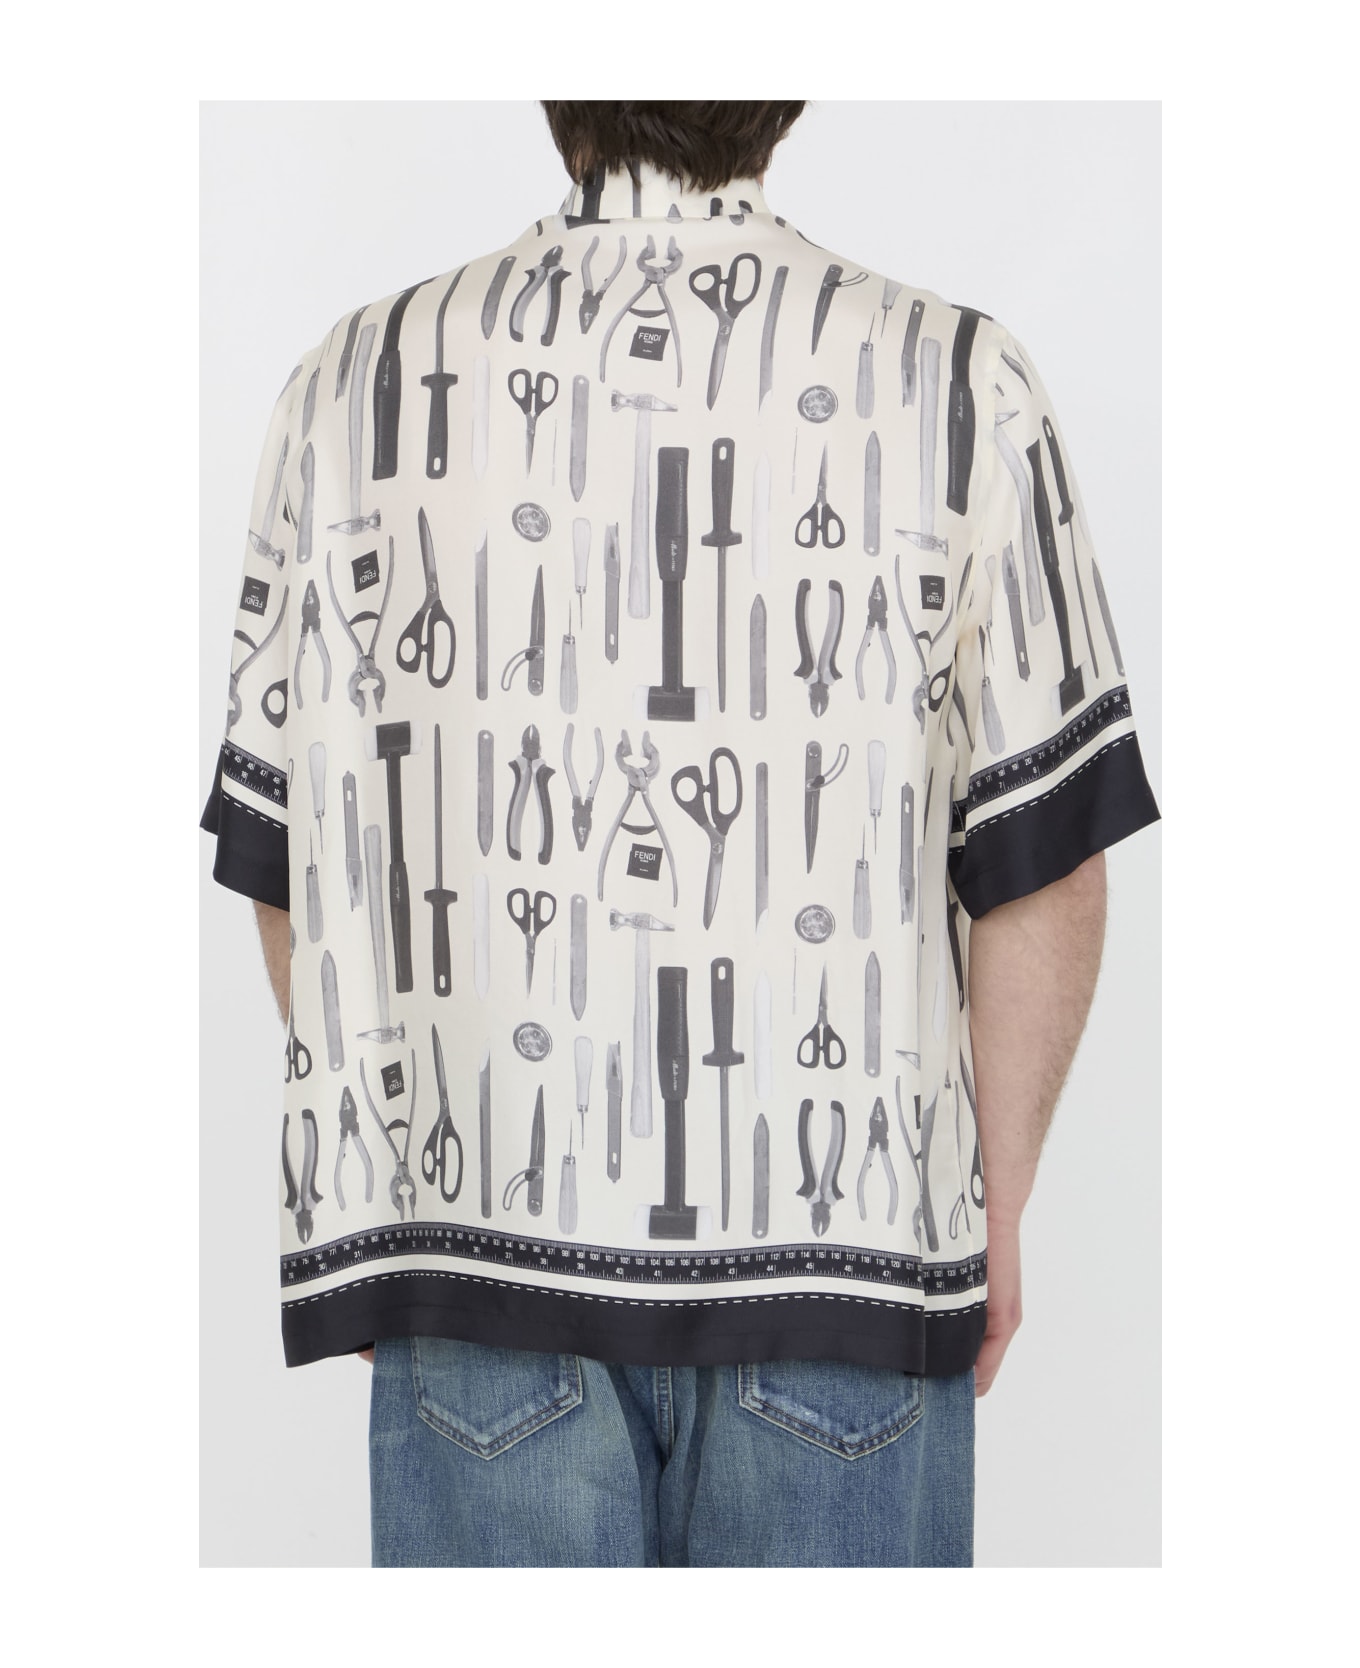 Fendi Tools Shirt - WHITE シャツ